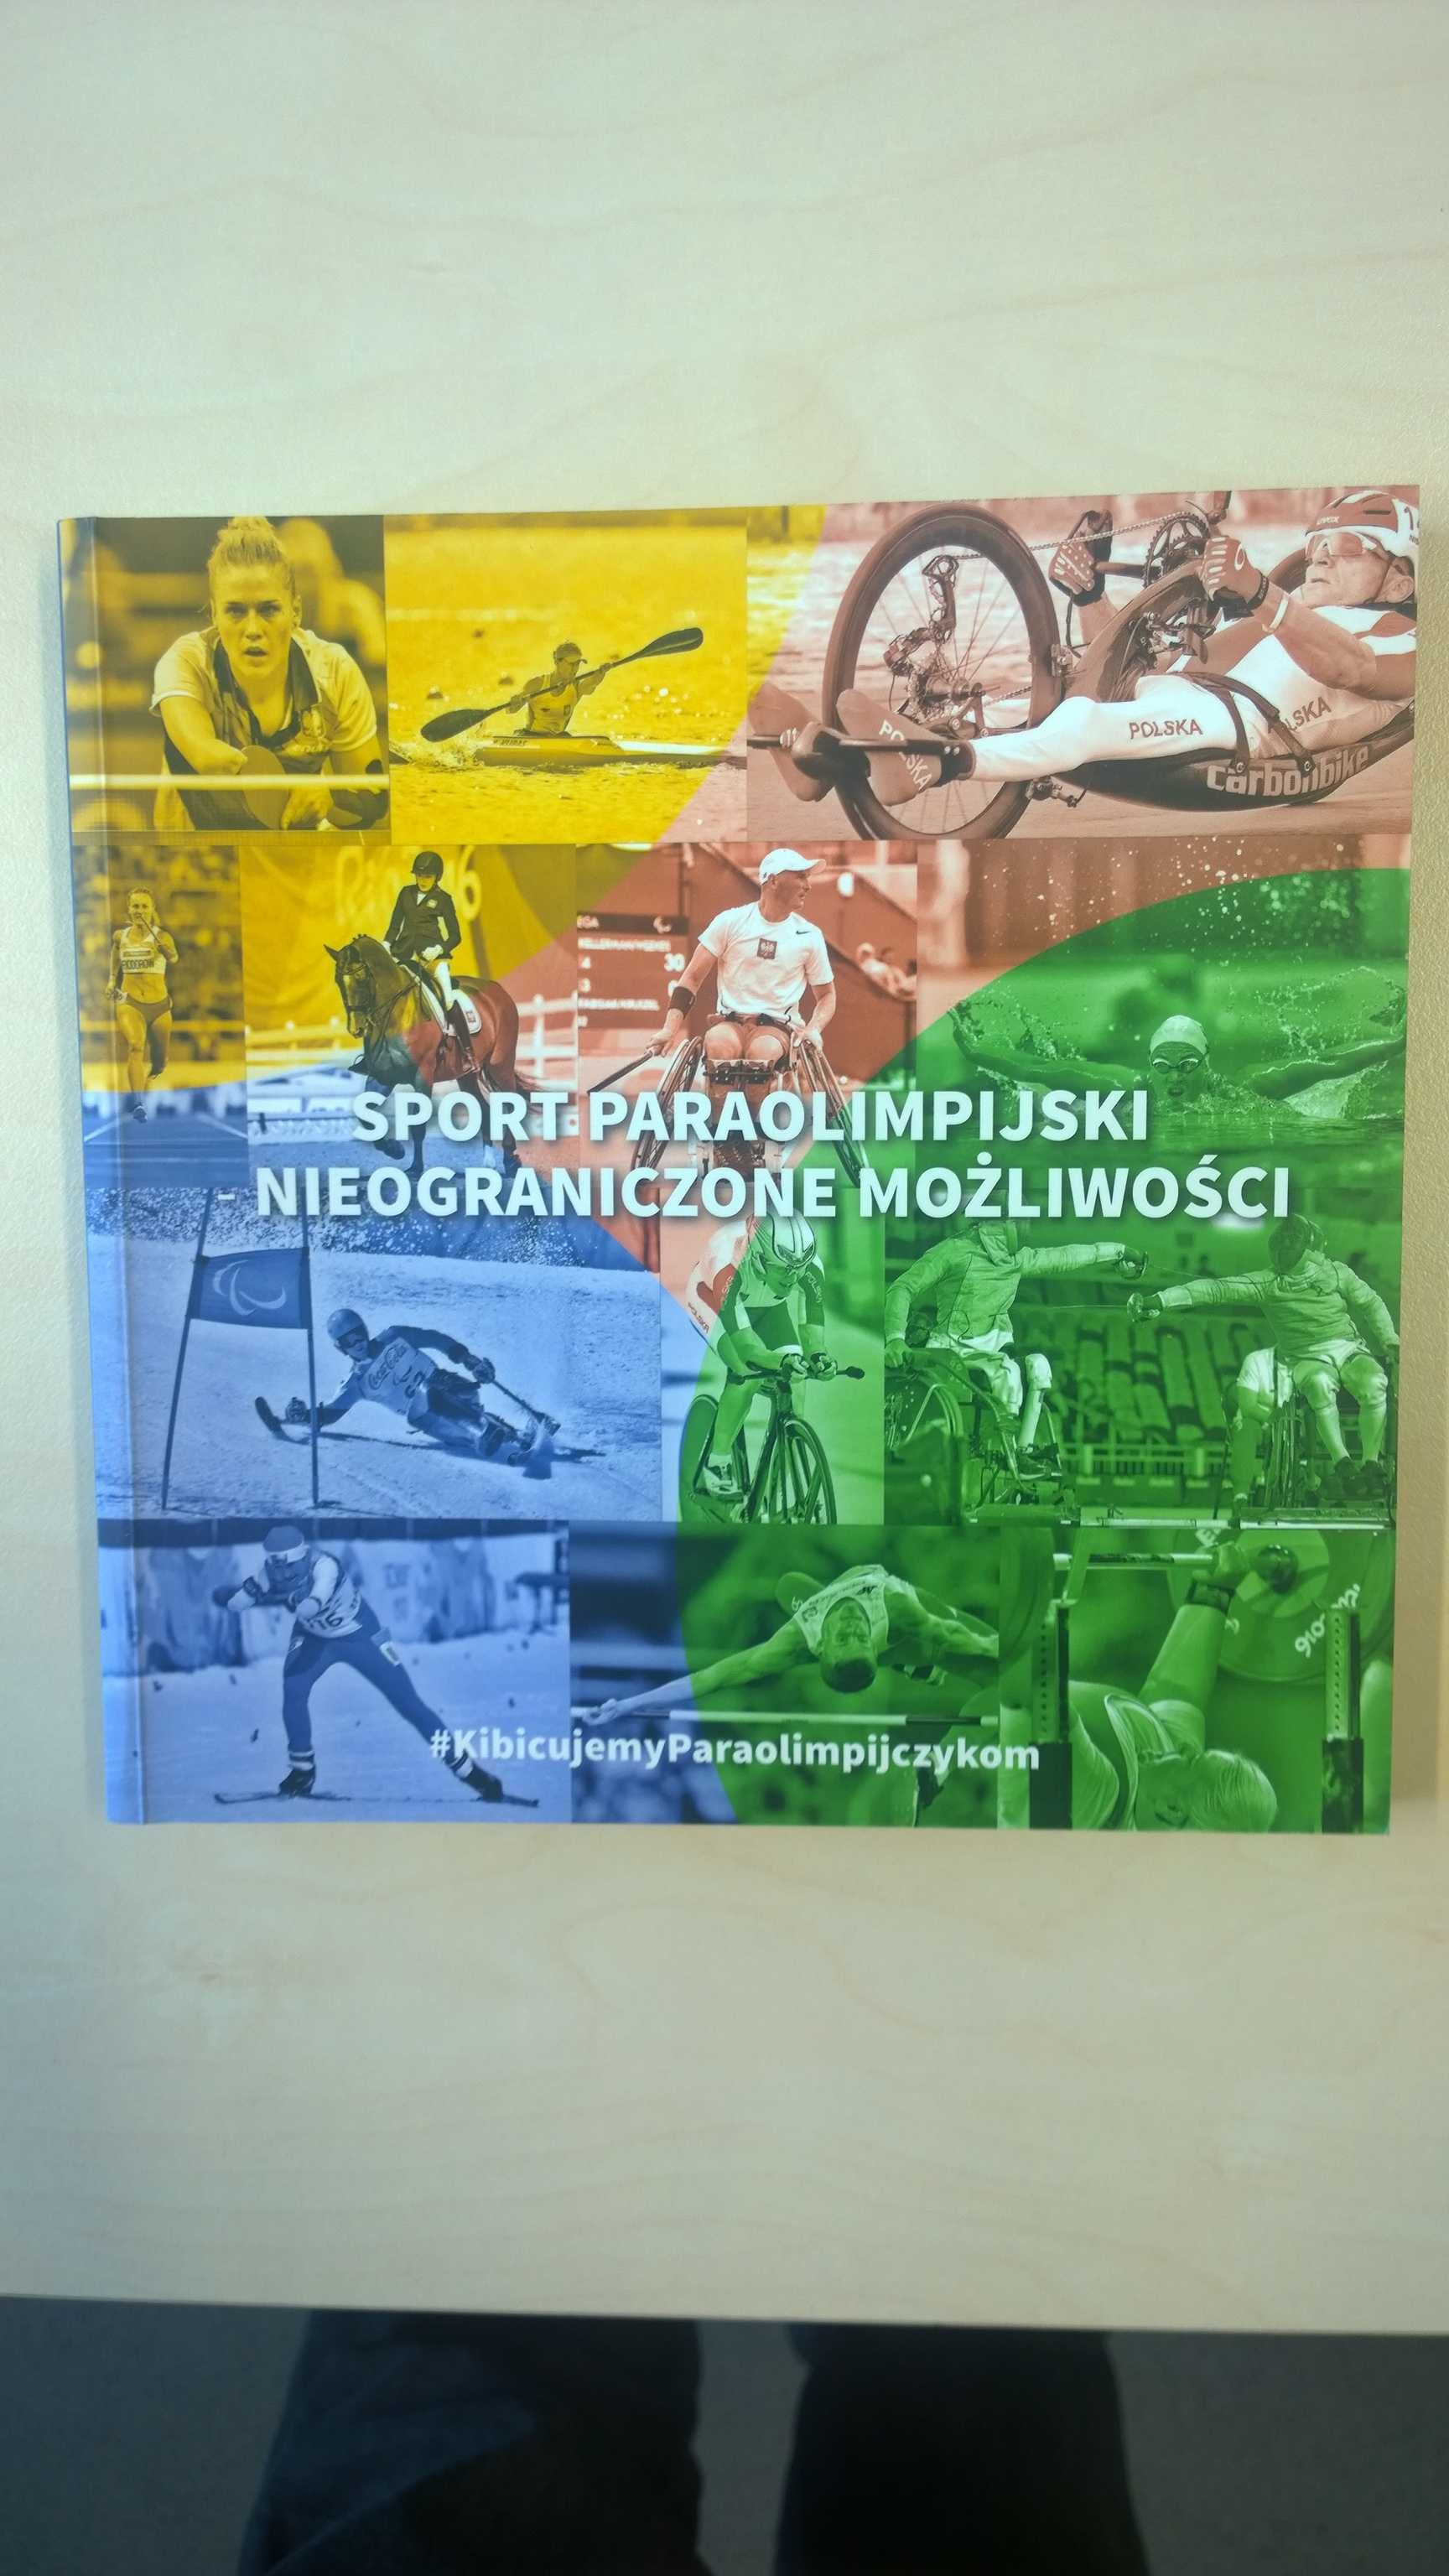 Sport paraolimpijski – nieograniczone możliwości - album, monografia